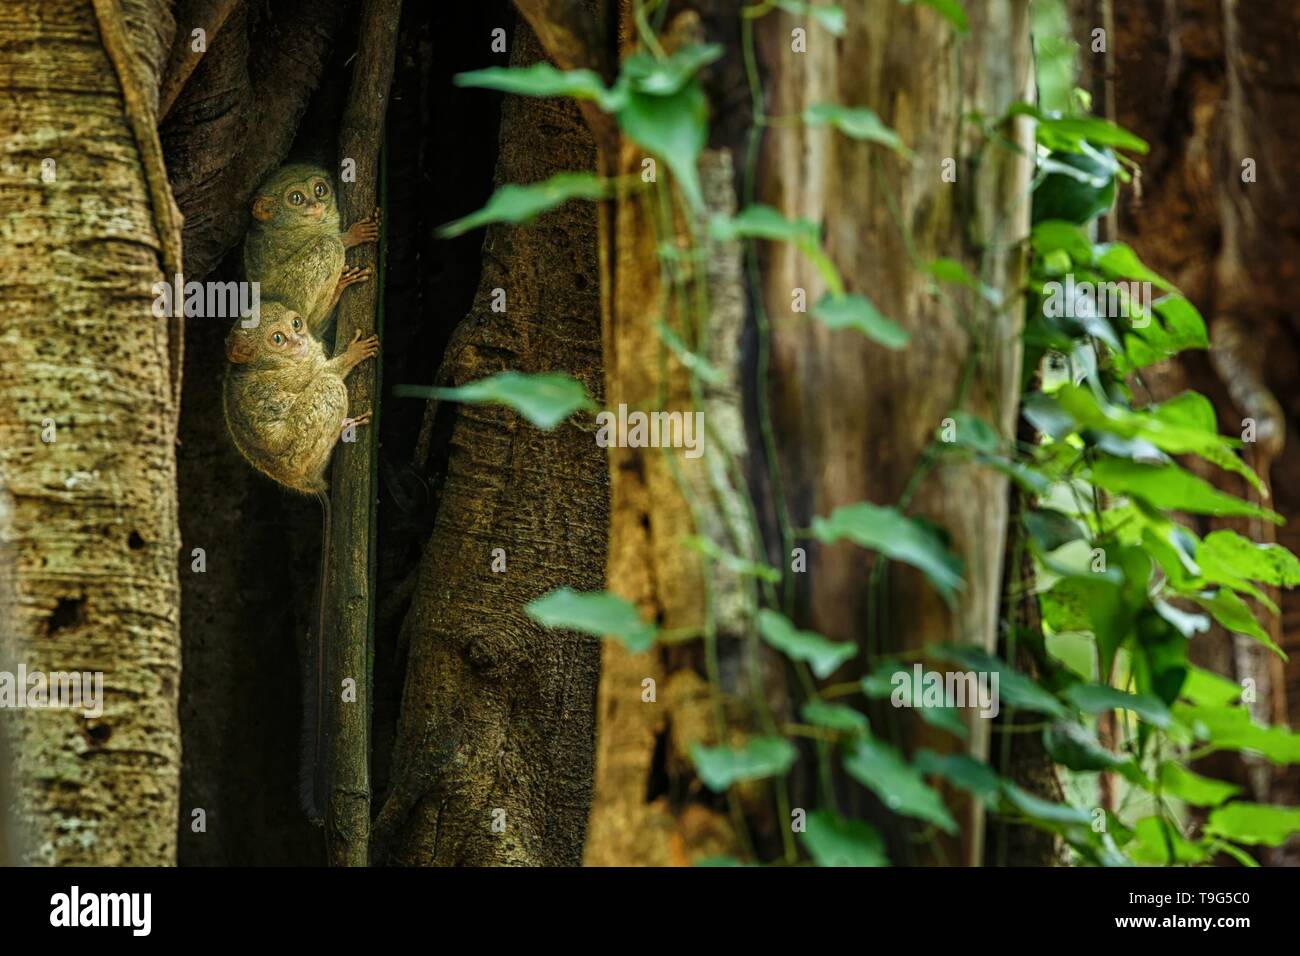 Famille des tarsiers, spectrale Tarsius spectrum, portrait des mammifères nocturnes endémiques rares, petit mignon primat dans de grands ficus en jungle, Tangkoko Banque D'Images